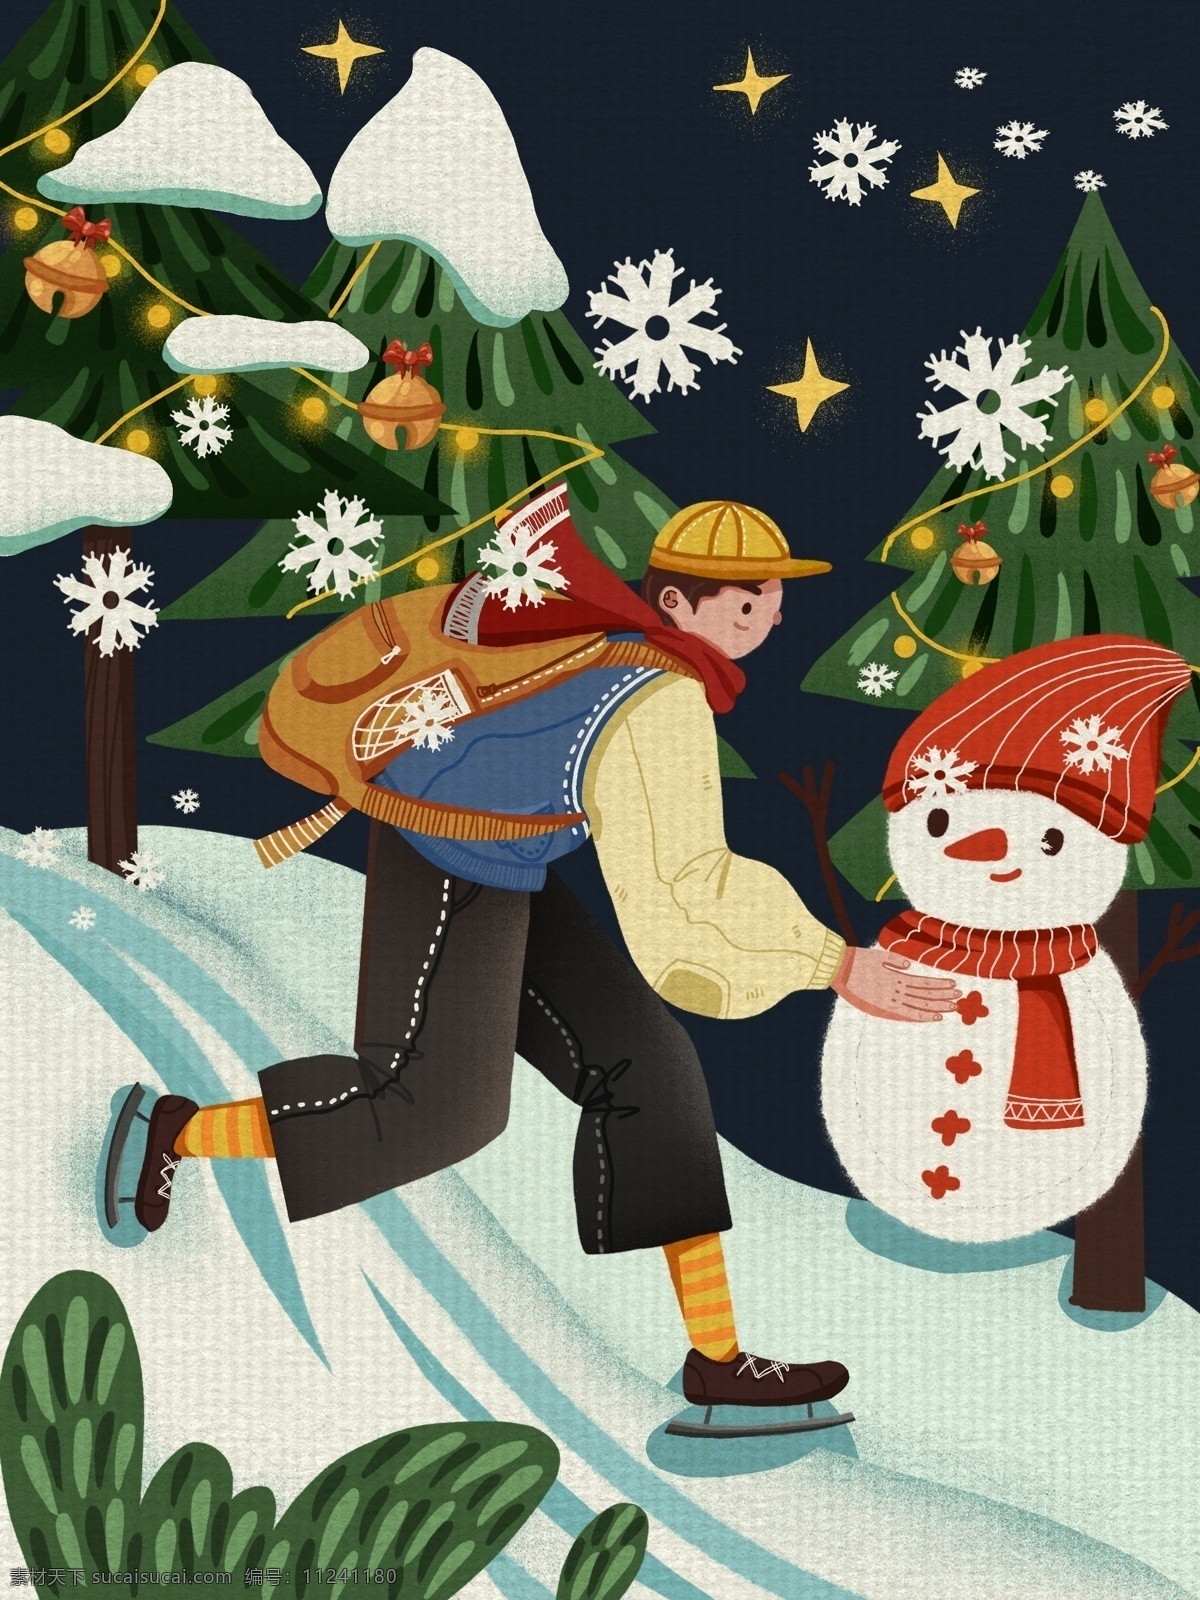 平安夜 男孩 雪地 里 溜冰 圣诞树 温馨 插画 雪人 星星 围巾 下雪 夜晚 铃铛 书包